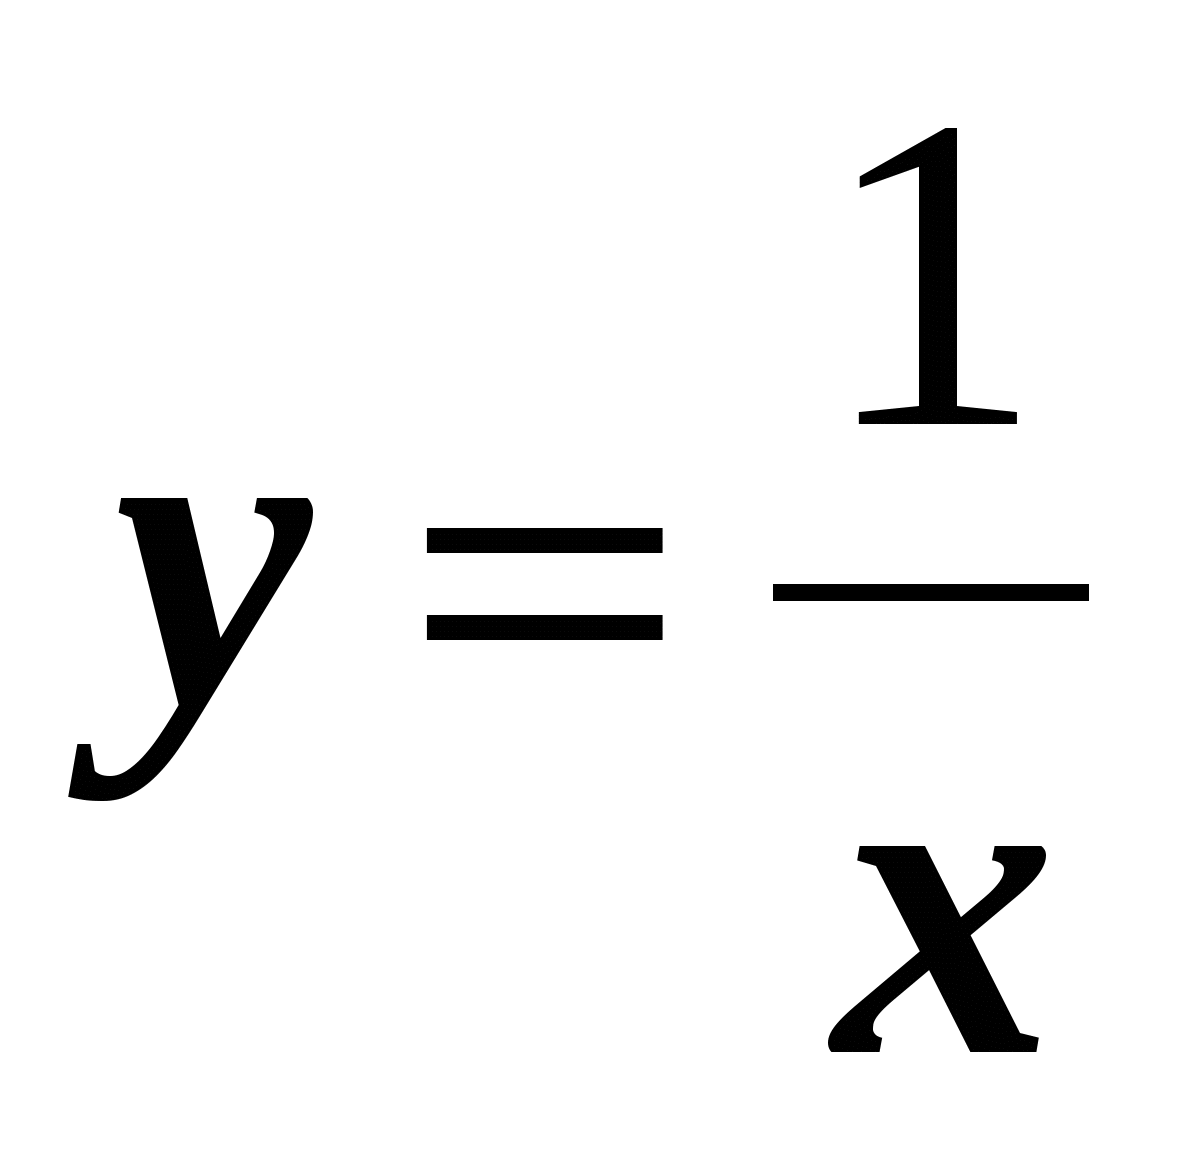 Конспект открытого урока алгебры по теме: Функция y= √x, ее график и свойства